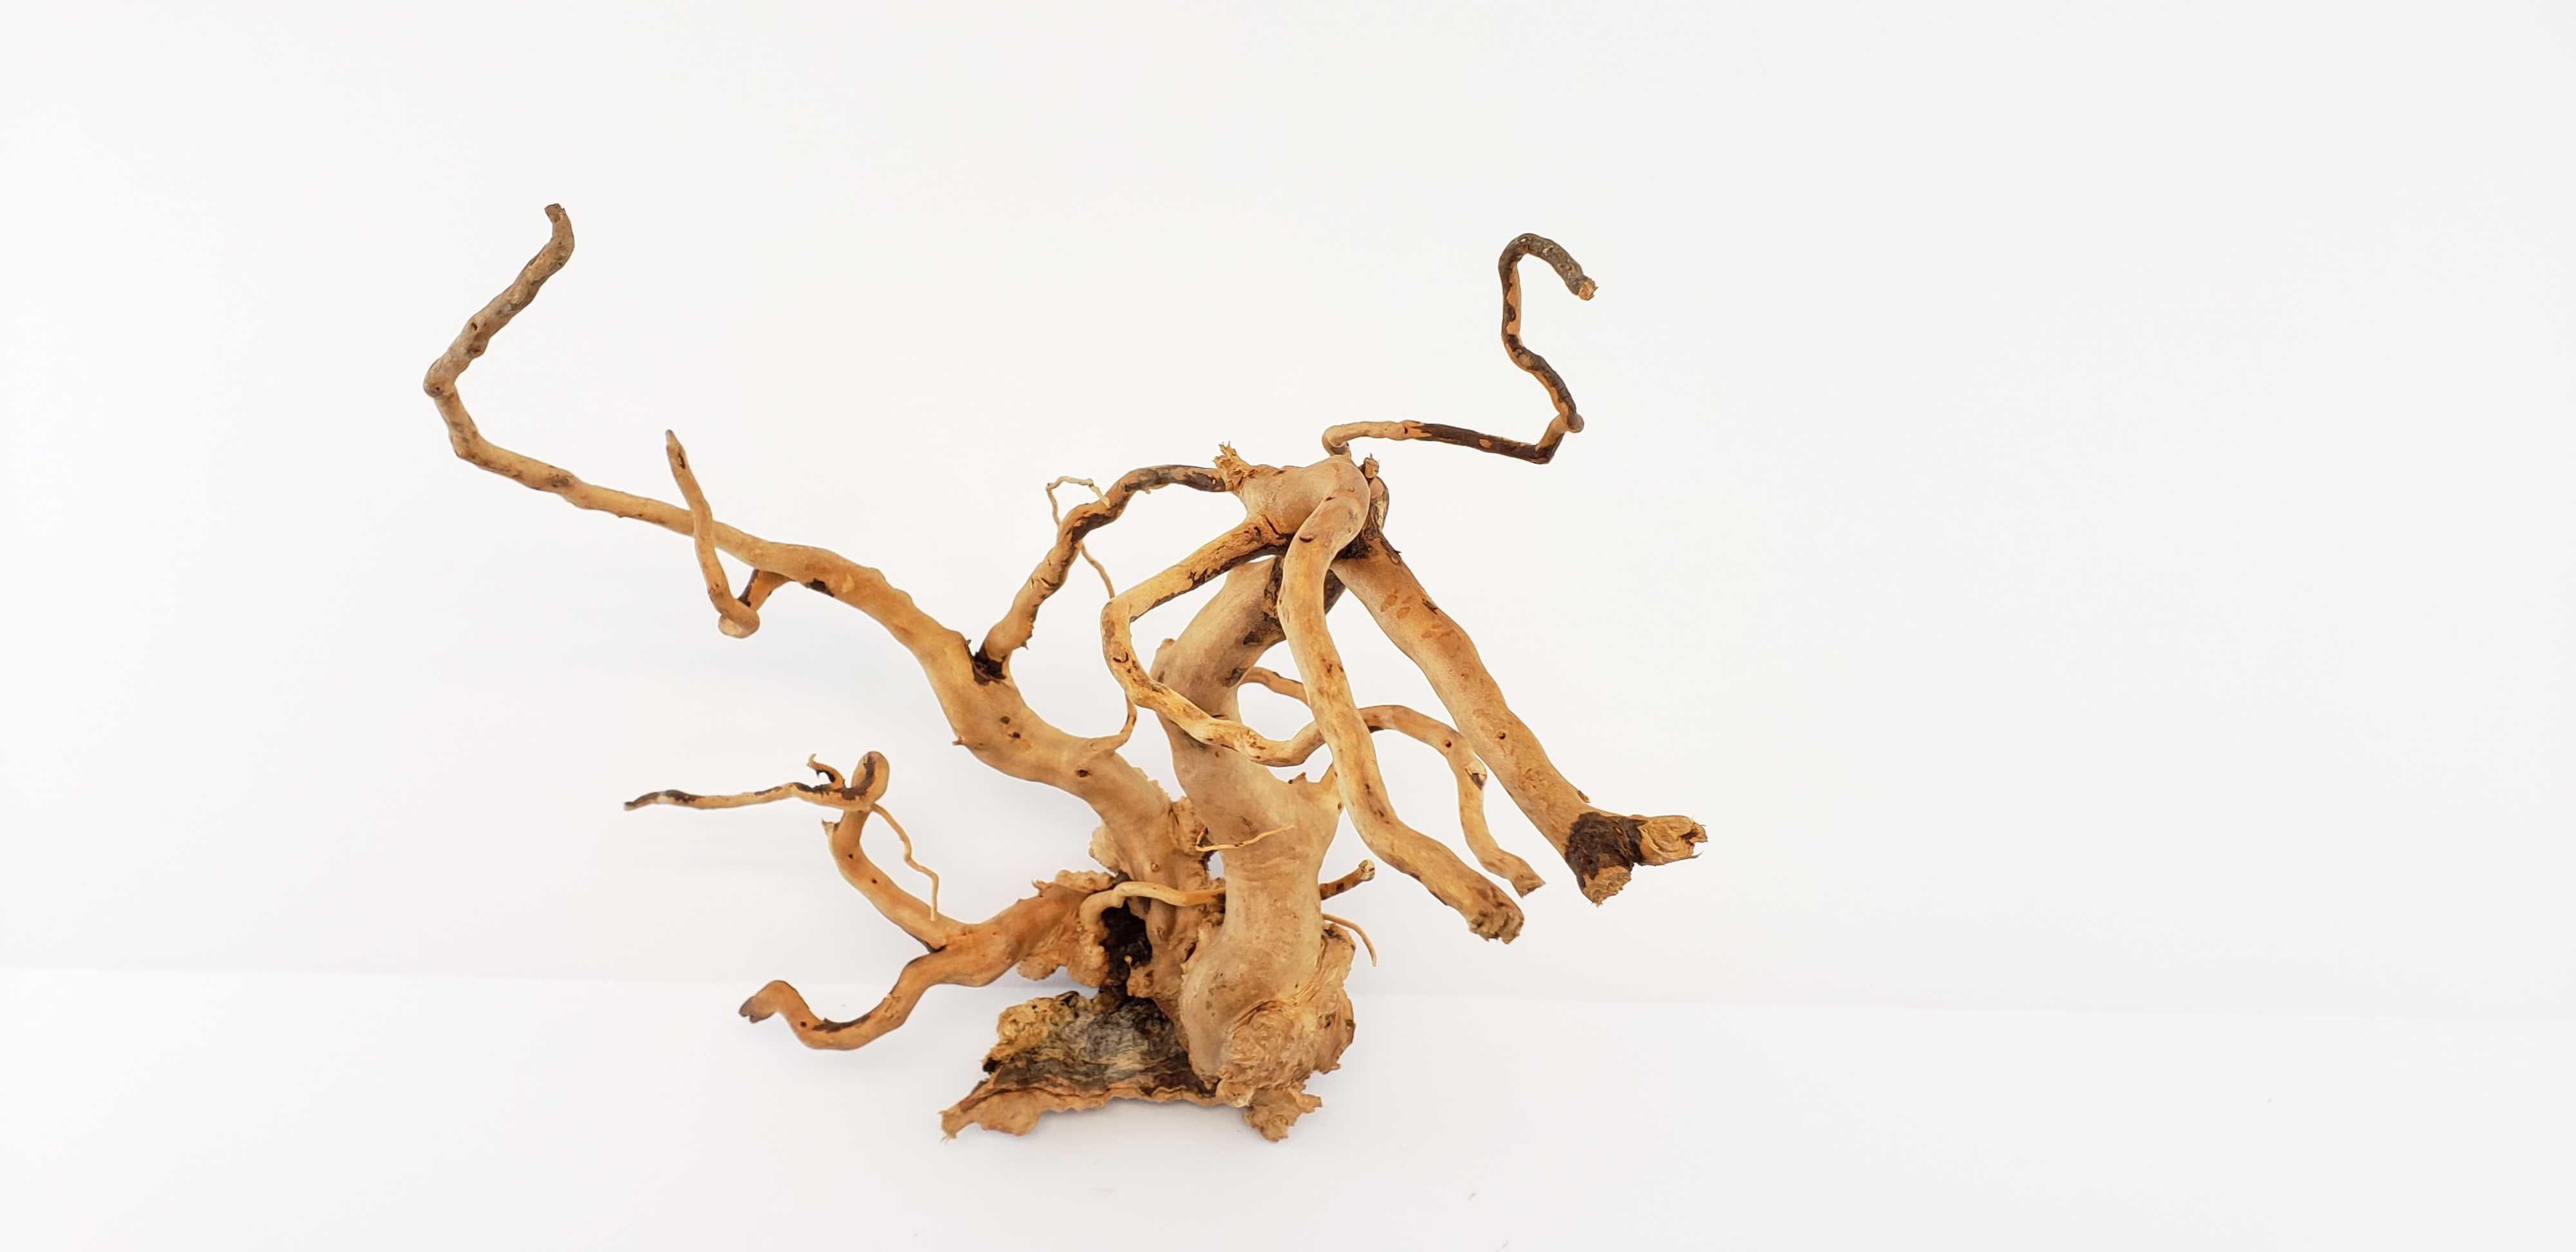 Spider Wood for Aquarium Approximate Size 6"-12" by Lifegard Aquatics